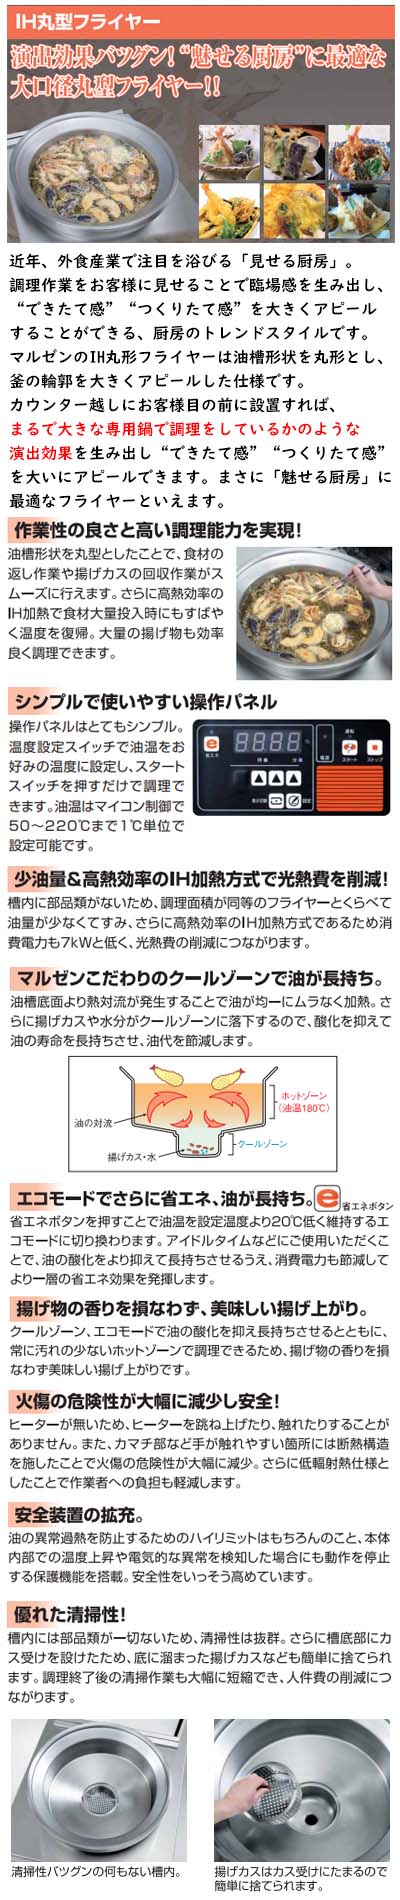 マルゼン IH丸型フライヤー MIF-500 三相200V 業務用 新品 送料無料